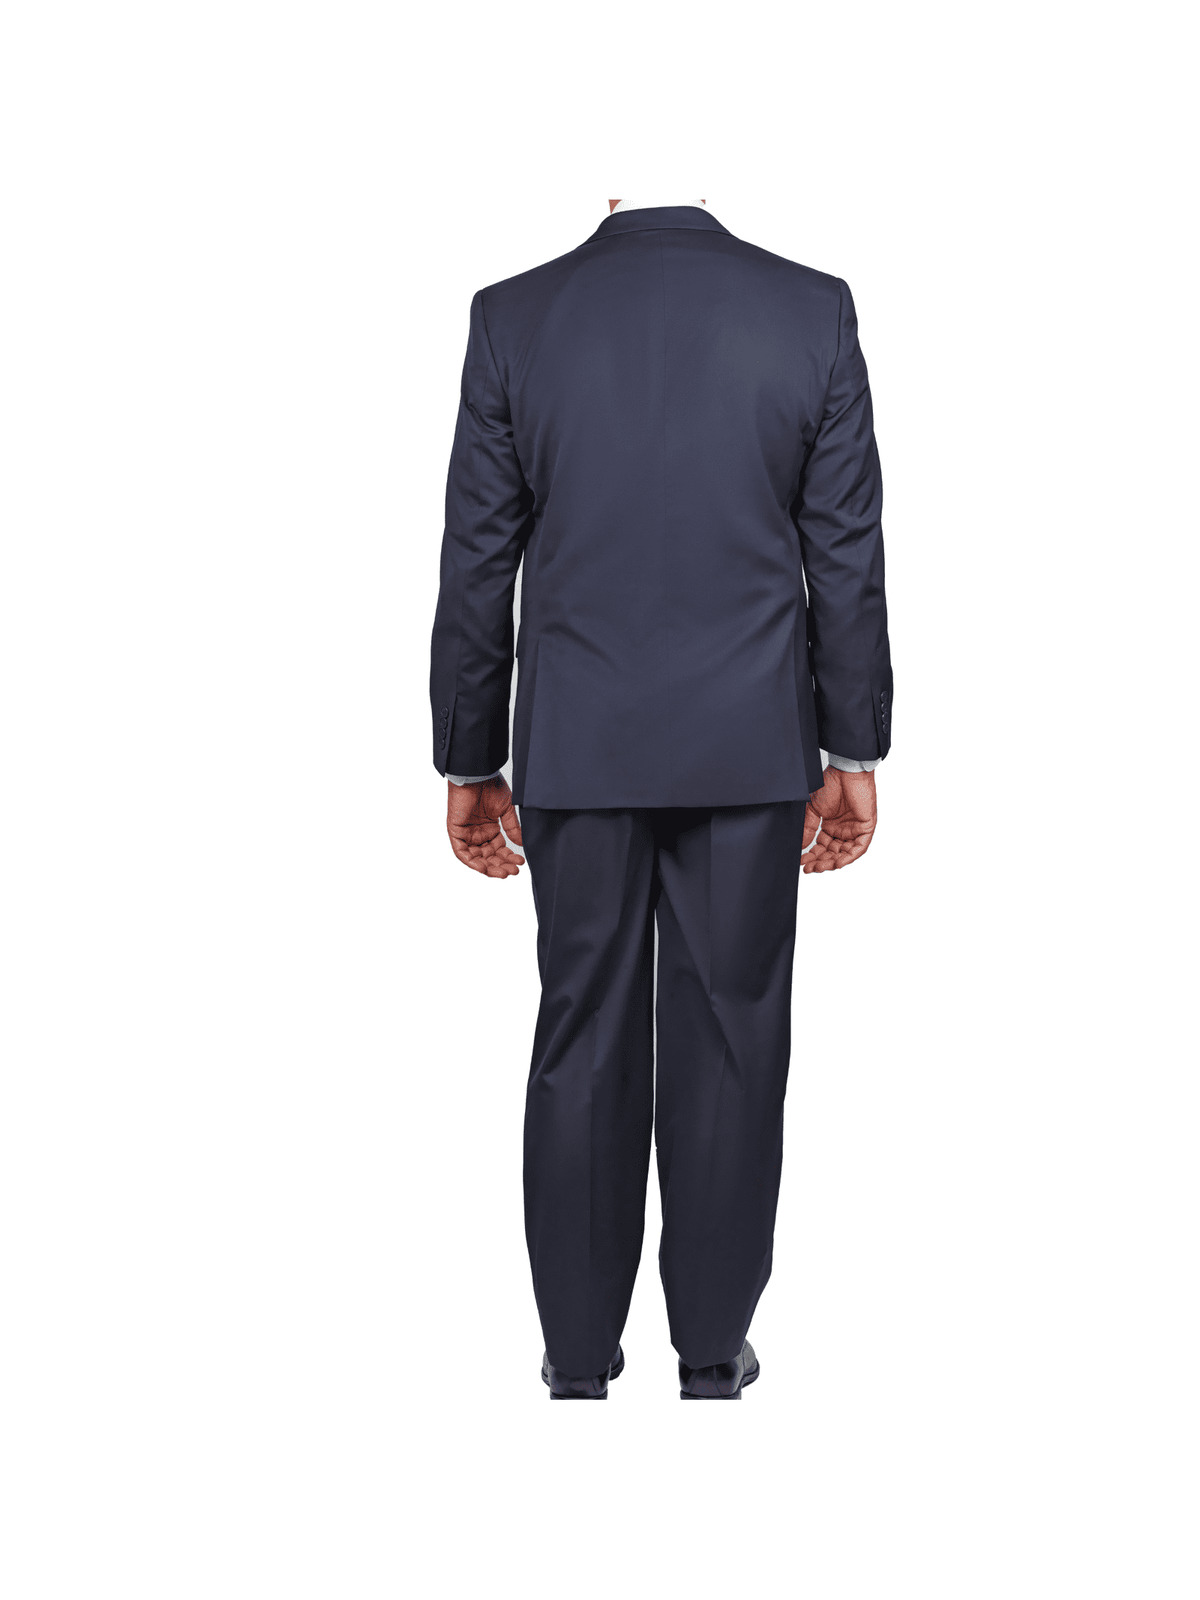 back view of navy blue classic fit men&#39;s suit